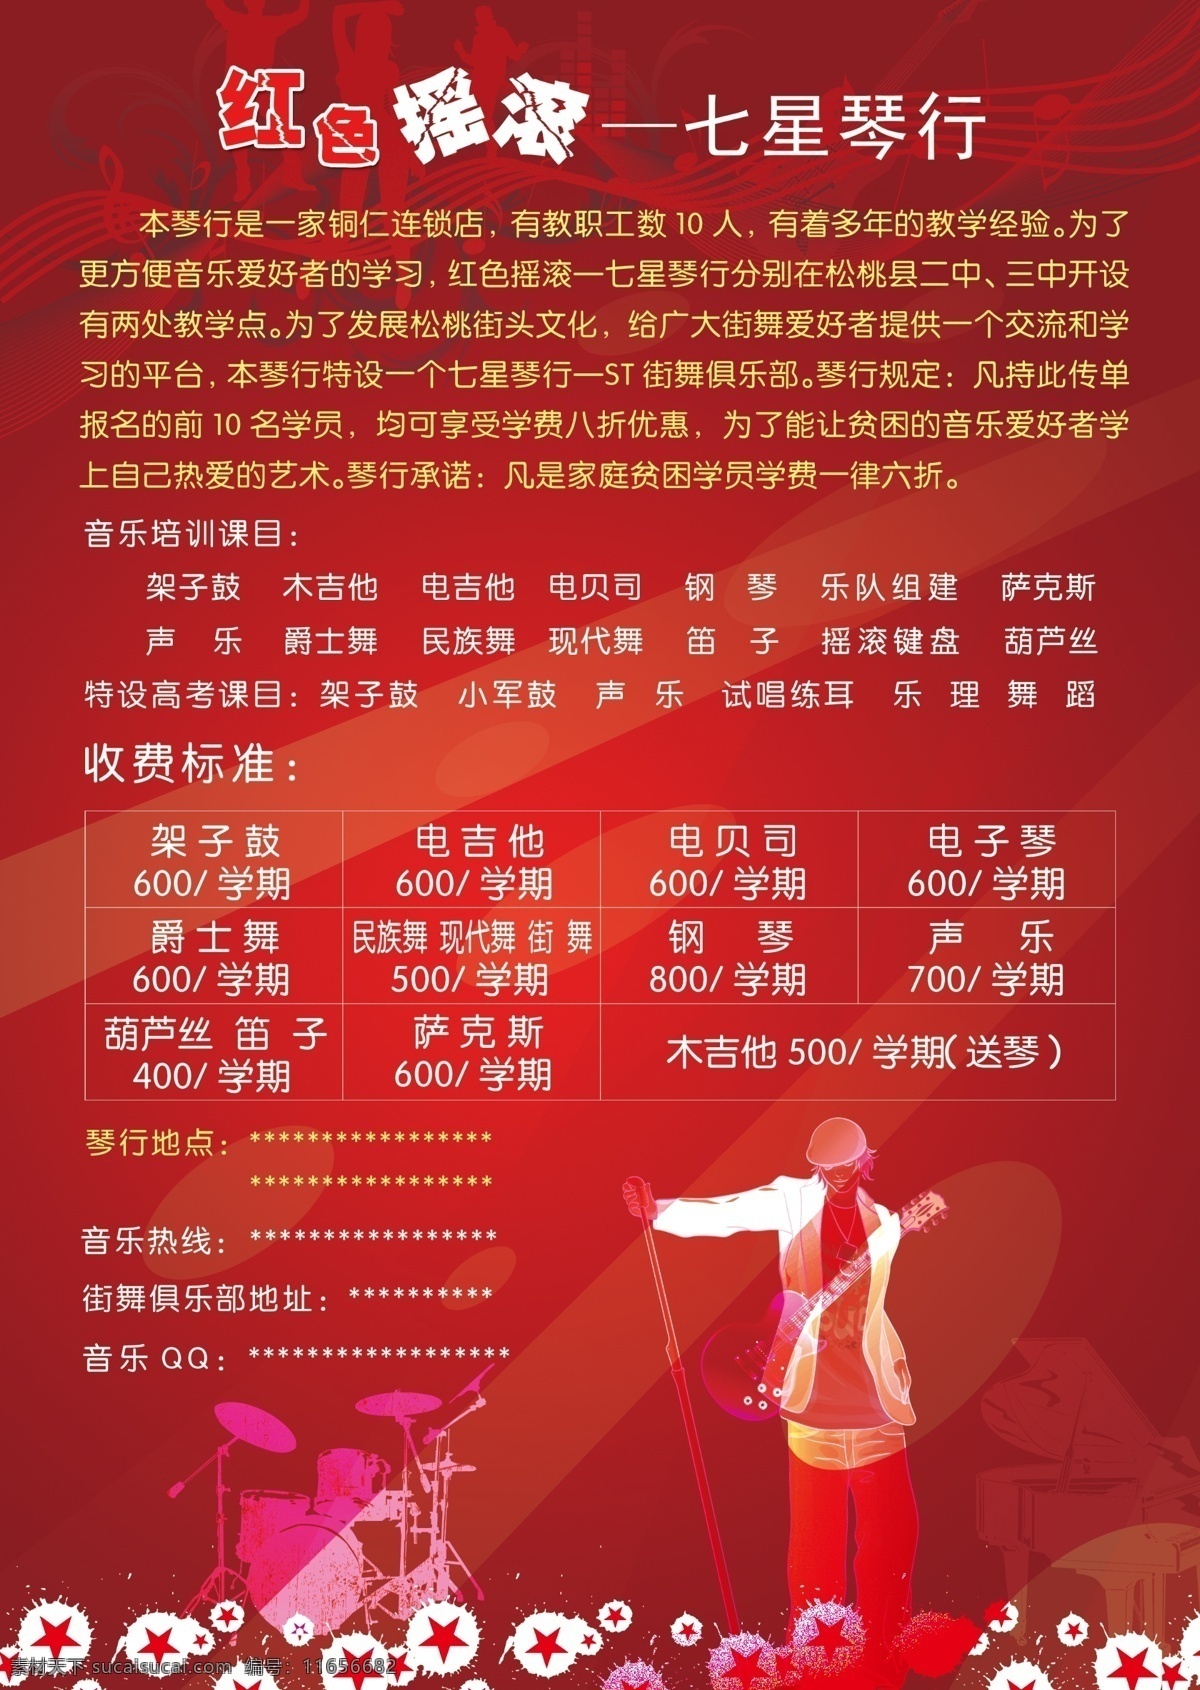 音乐 培训 dm 单 dm宣传单 广告设计模板 红色背景 红色花边 架子鼓 源文件 吉他手 海报 企业文化海报